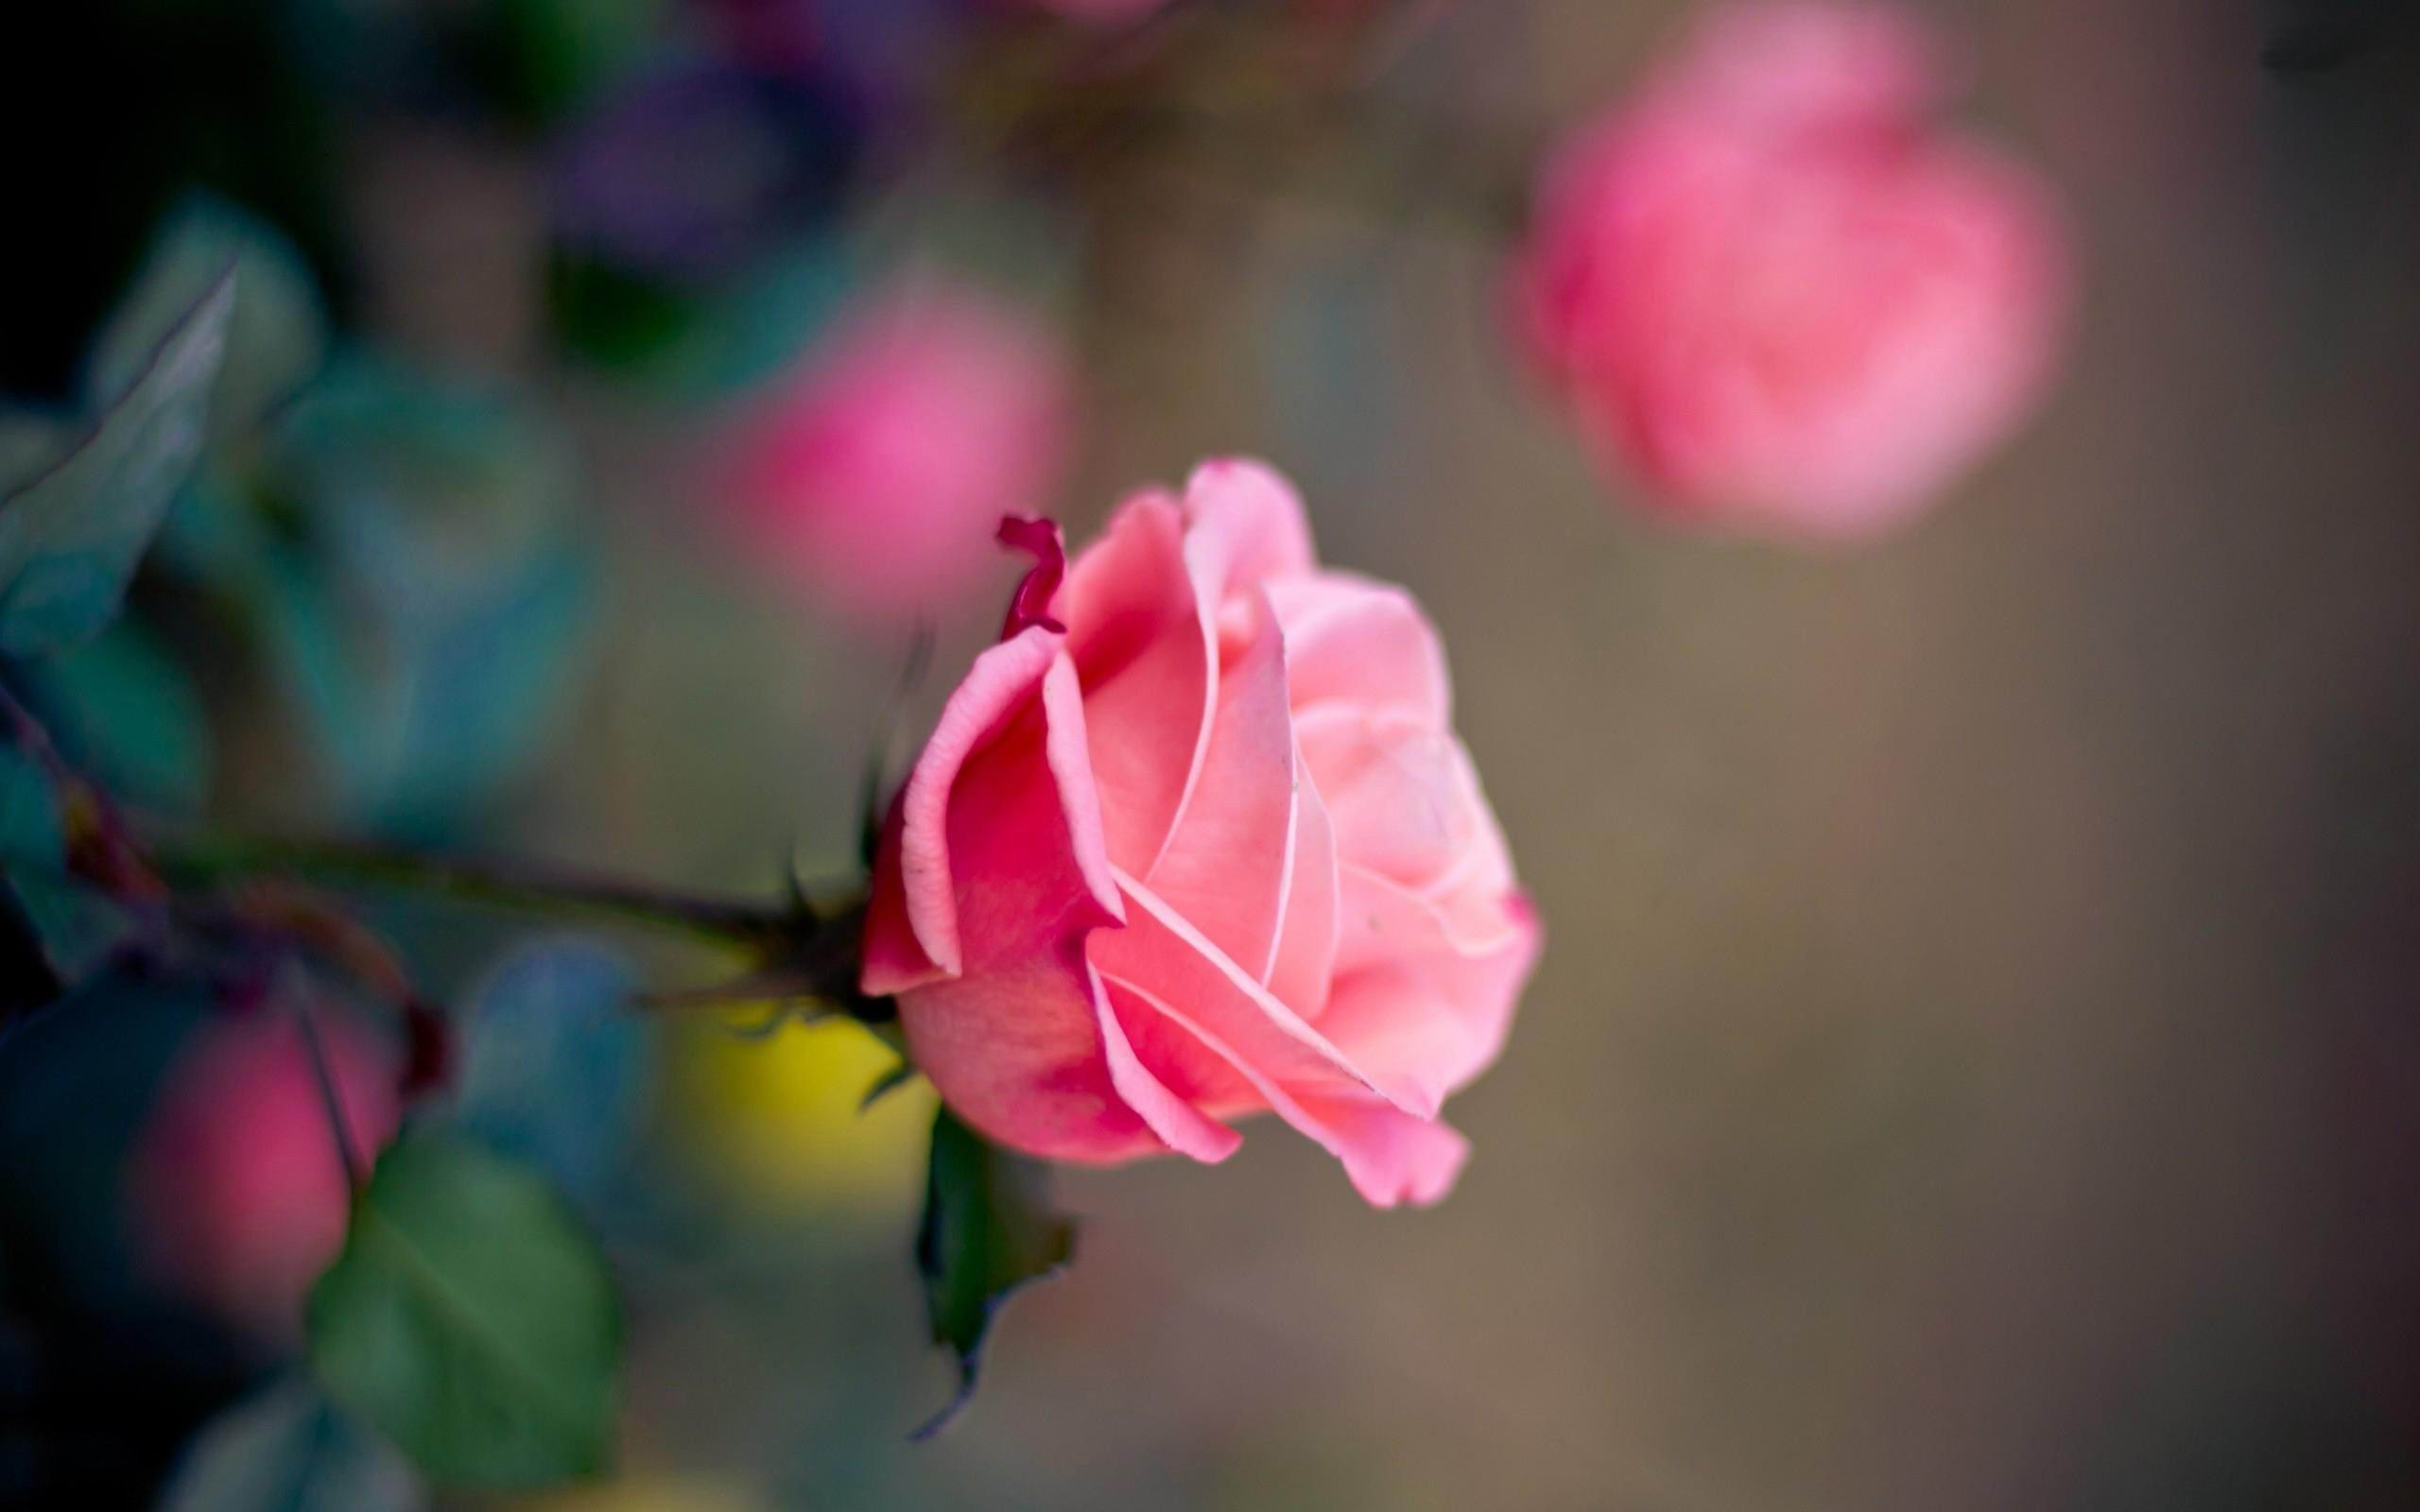 immagini di rose hd wallpaper,fiore,pianta fiorita,petalo,rose da giardino,rosa